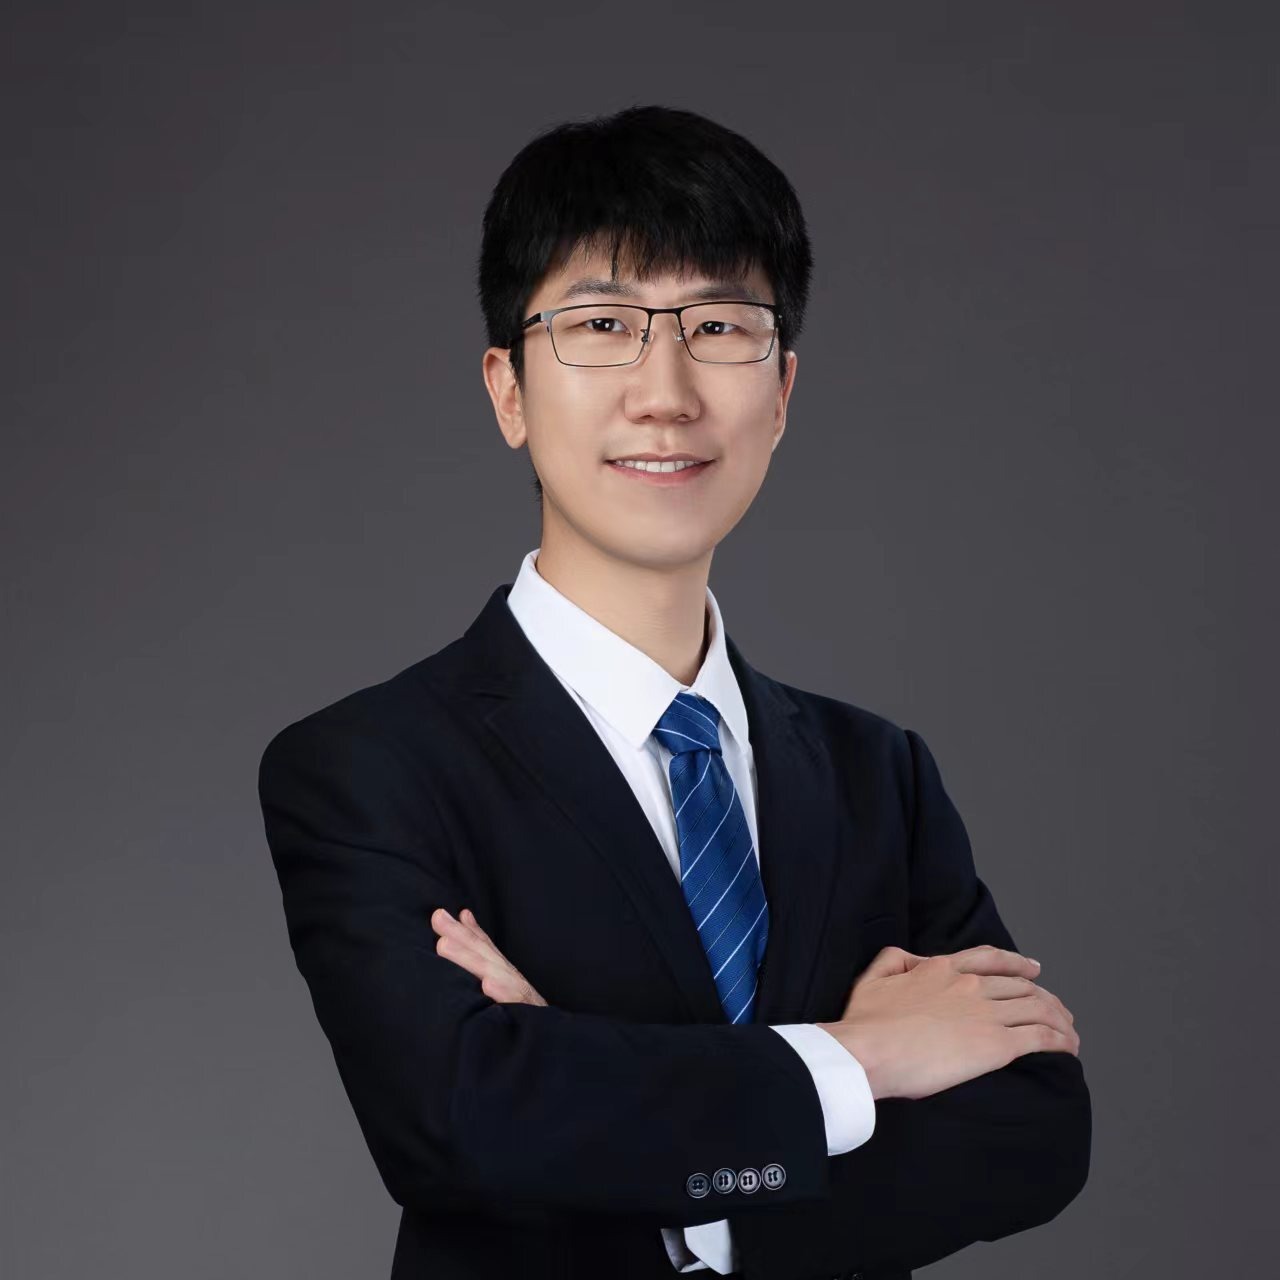 Dr. Jiarui Fang